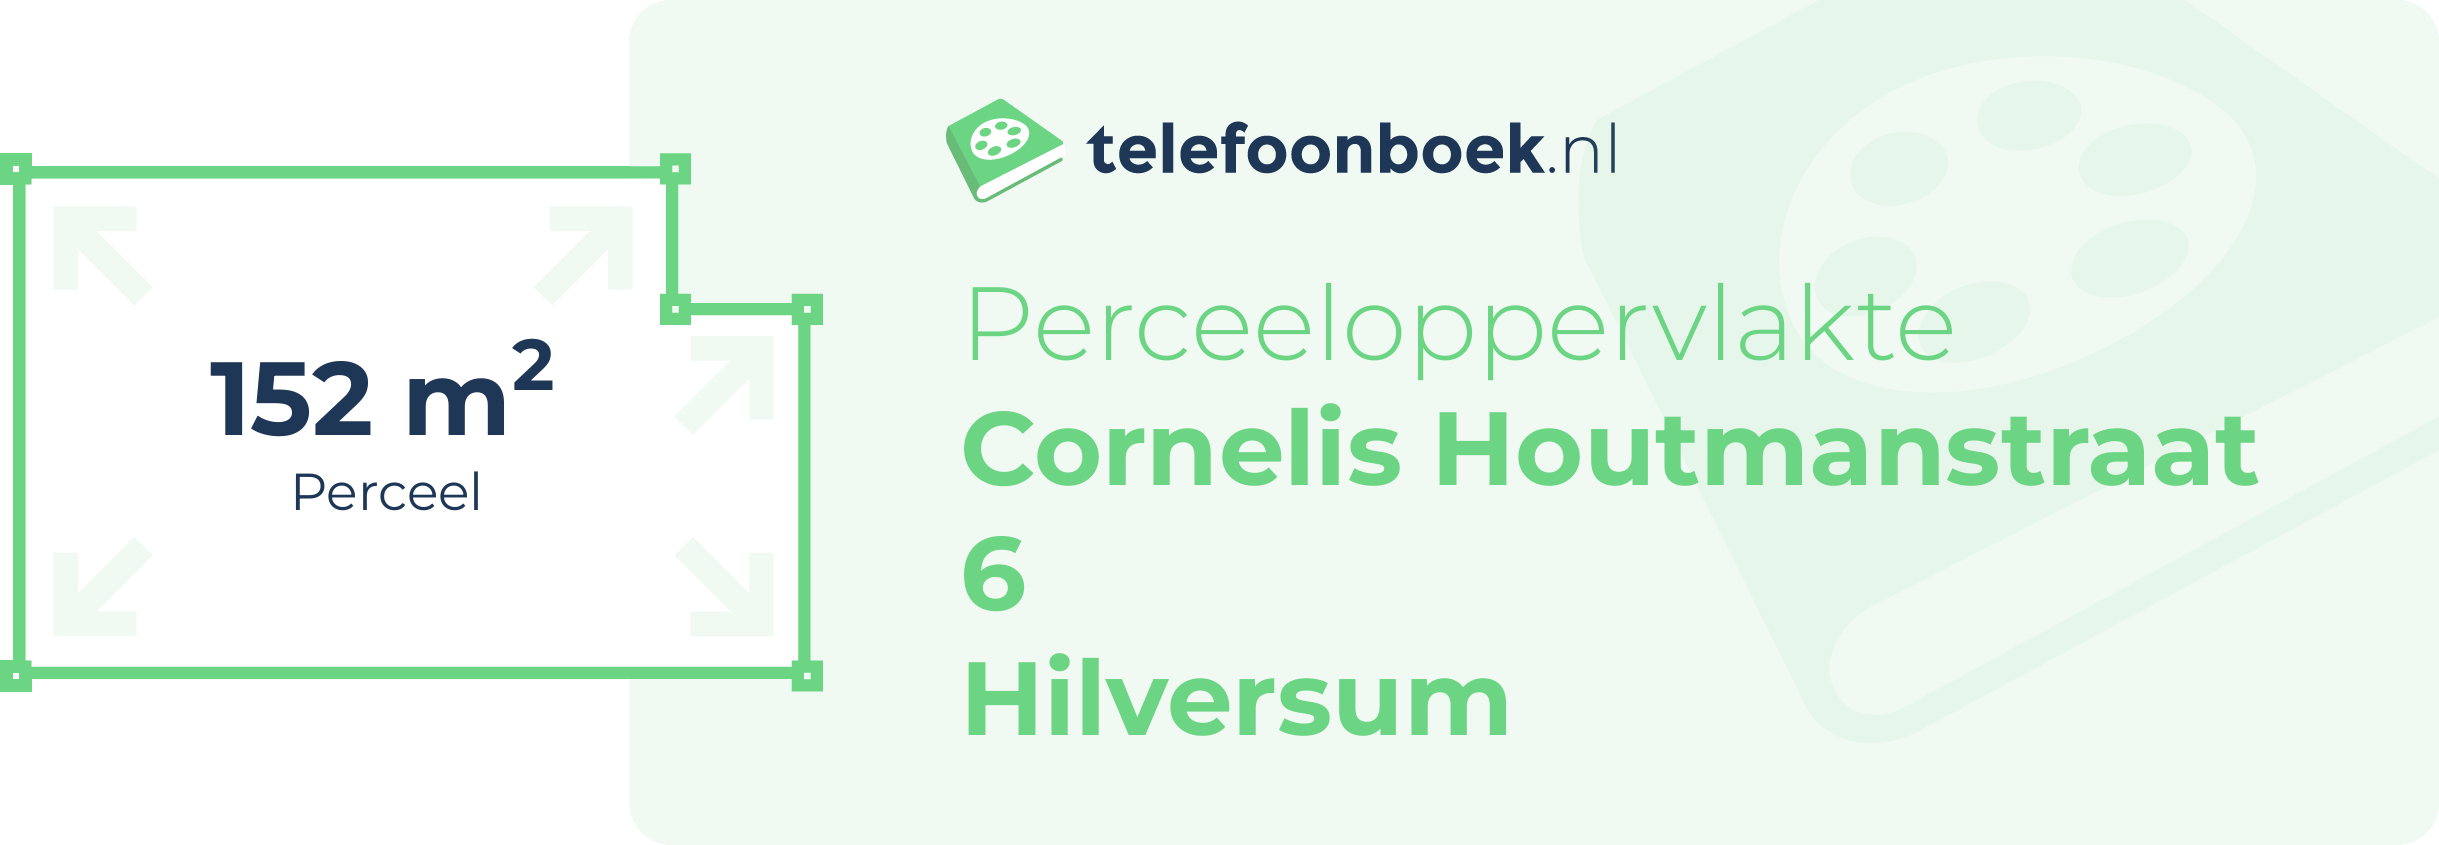 Perceeloppervlakte Cornelis Houtmanstraat 6 Hilversum